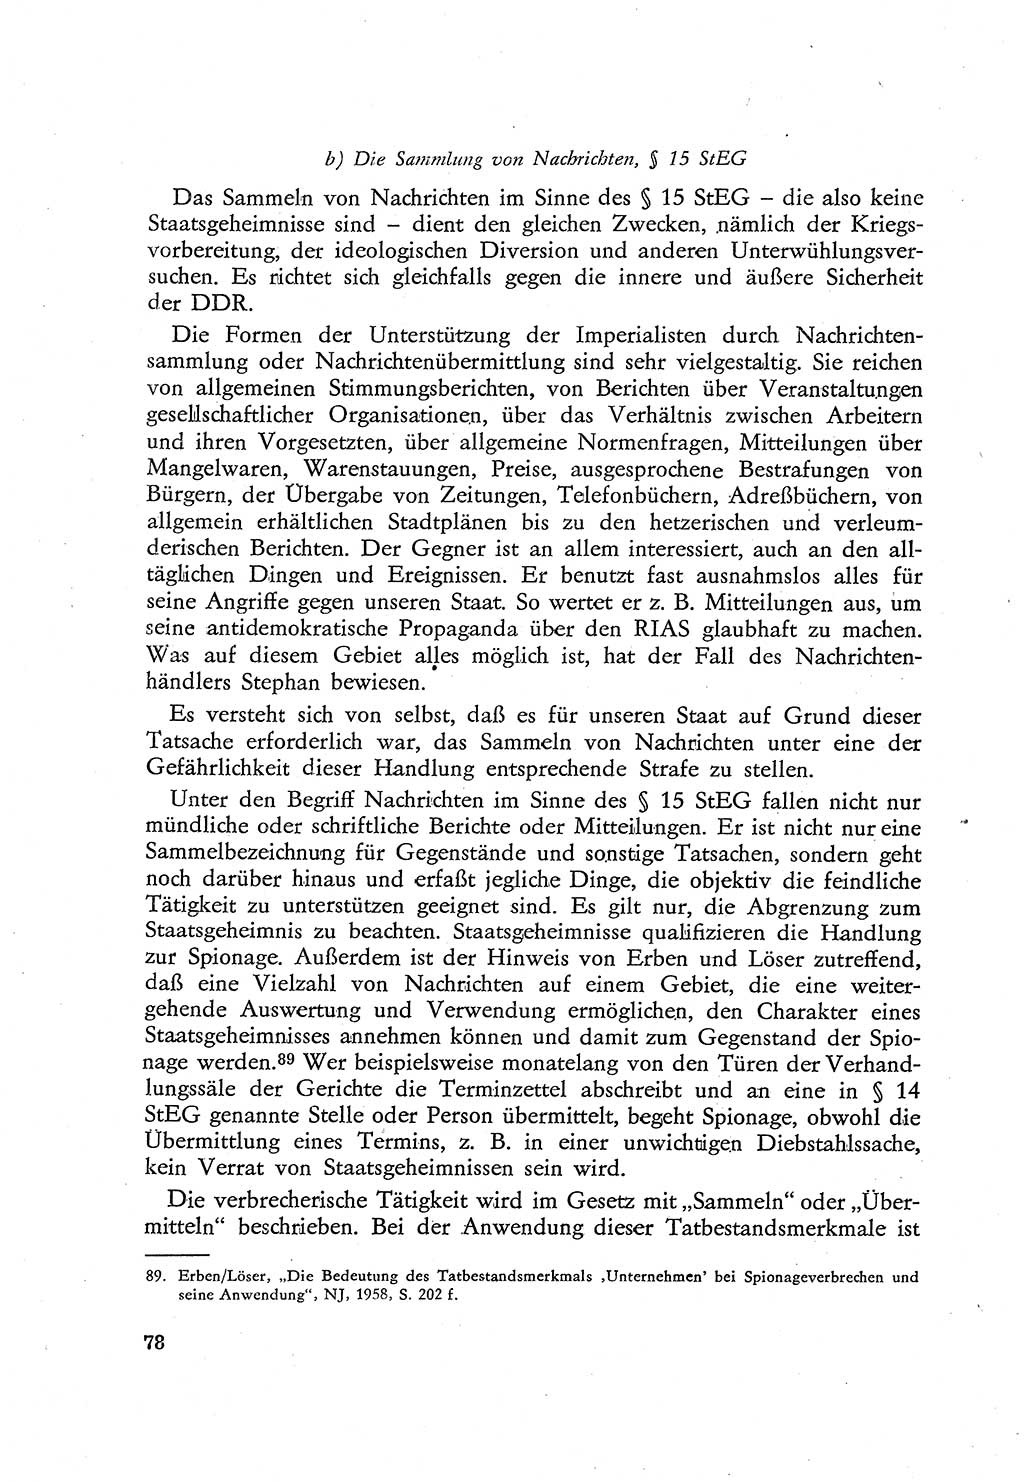 Beiträge zum Strafrecht [Deutsche Demokratische Republik (DDR)], Staatsverbrechen 1959, Seite 78 (Beitr. Strafr. DDR St.-Verbr. 1959, S. 78)